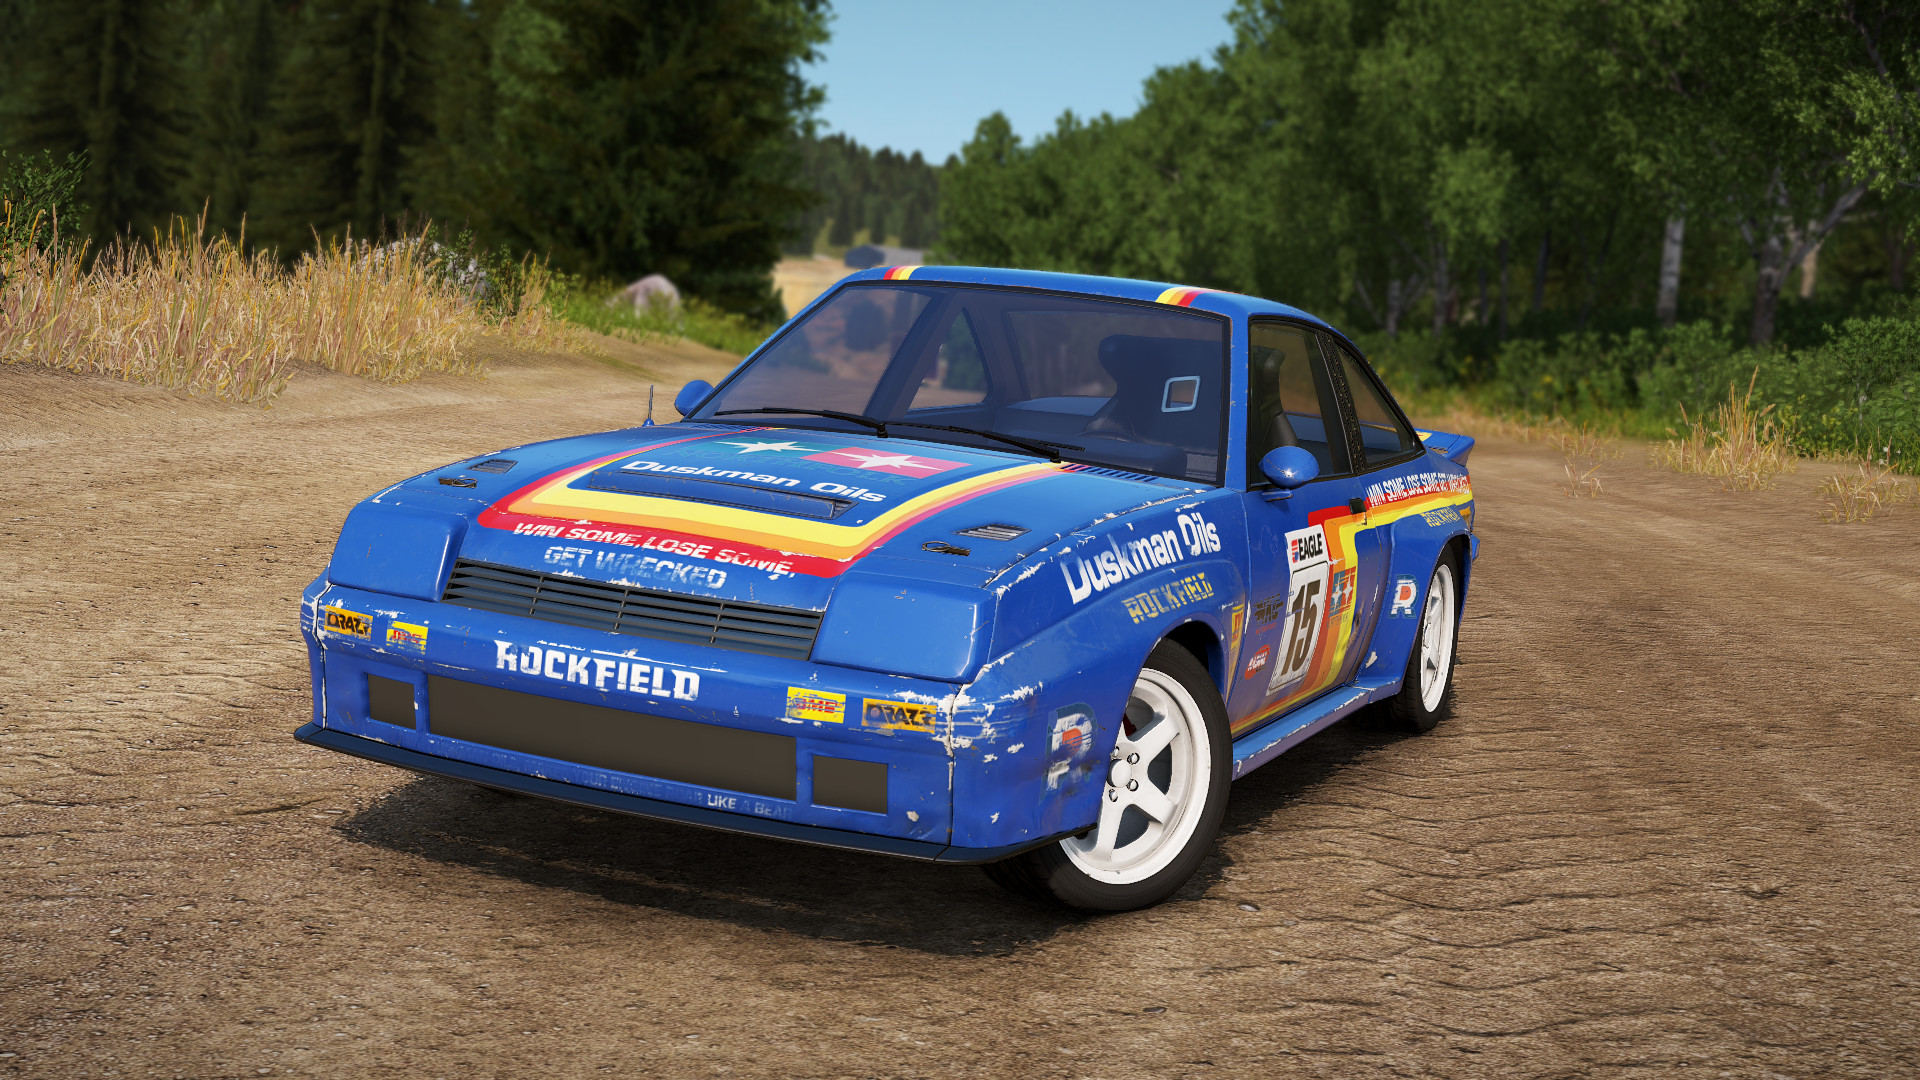 Wreckfest - Racing Heroes Car Pack DLC * STEAM RU ⚡